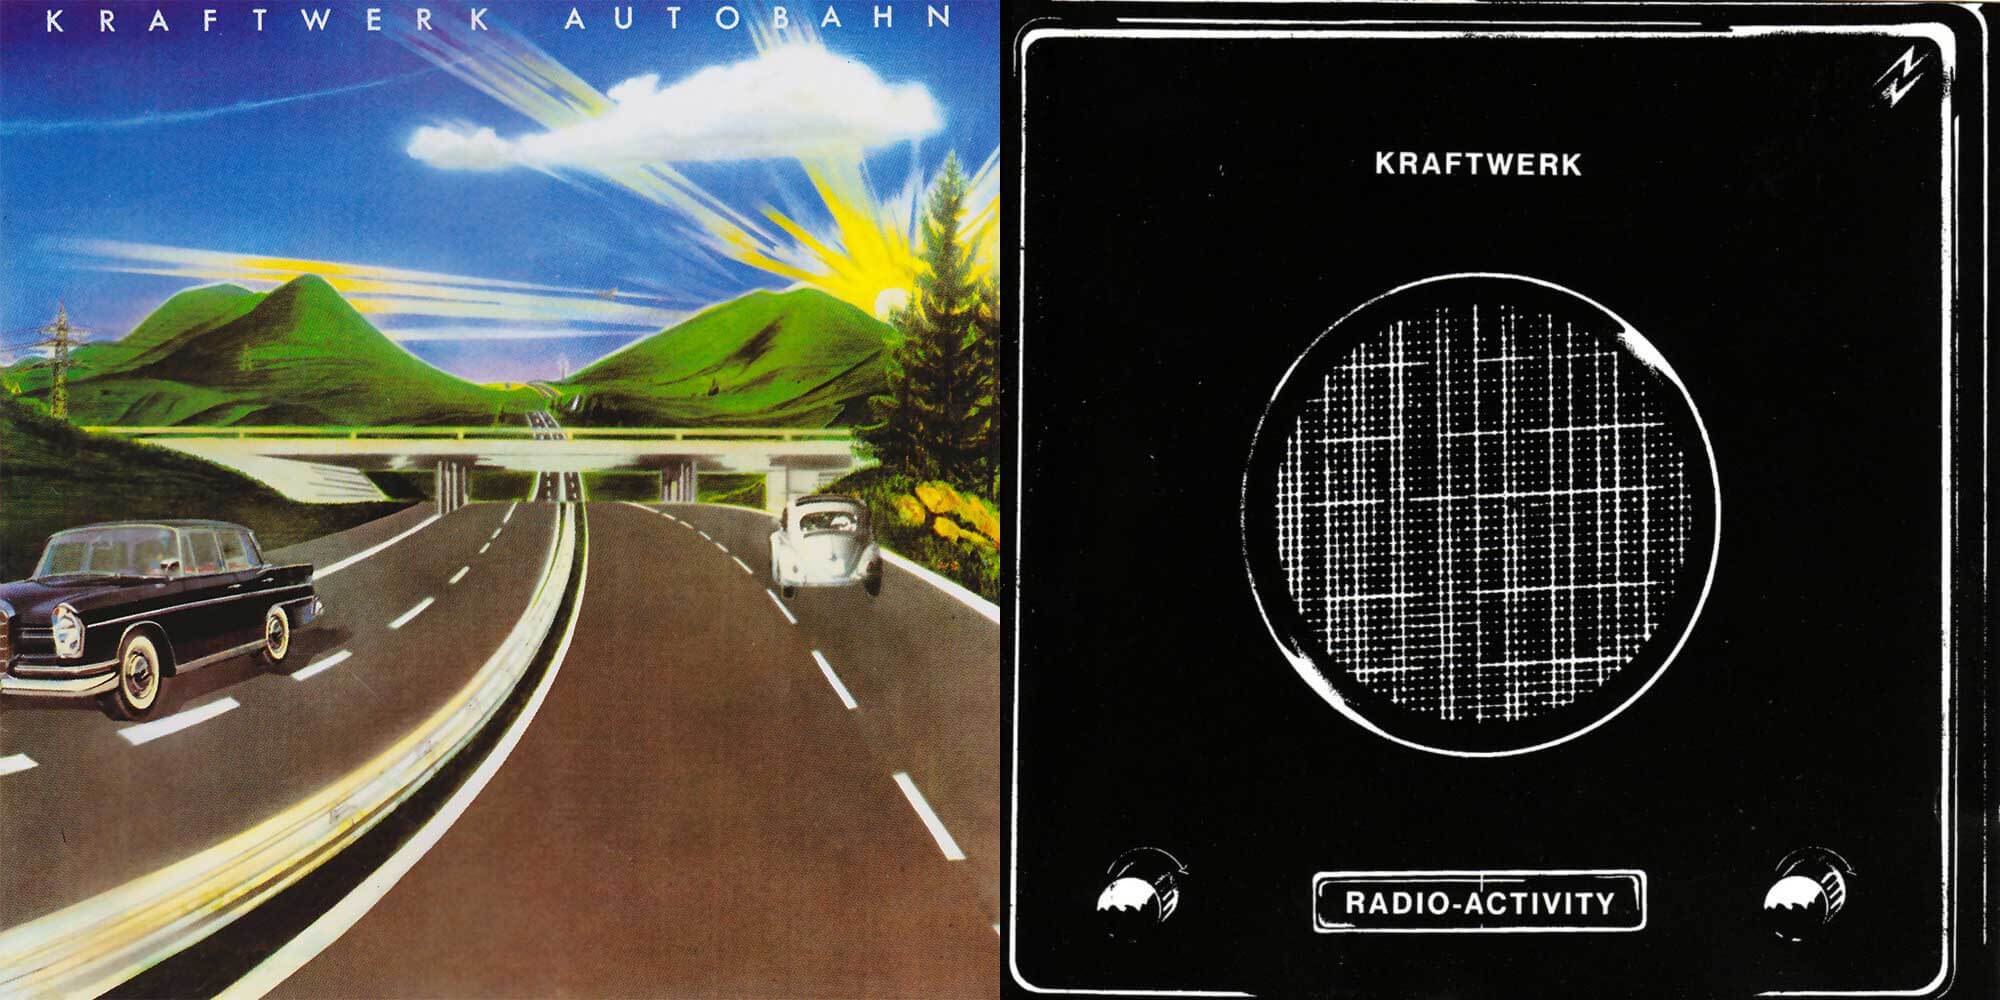 Autobahn / Radio-Activity